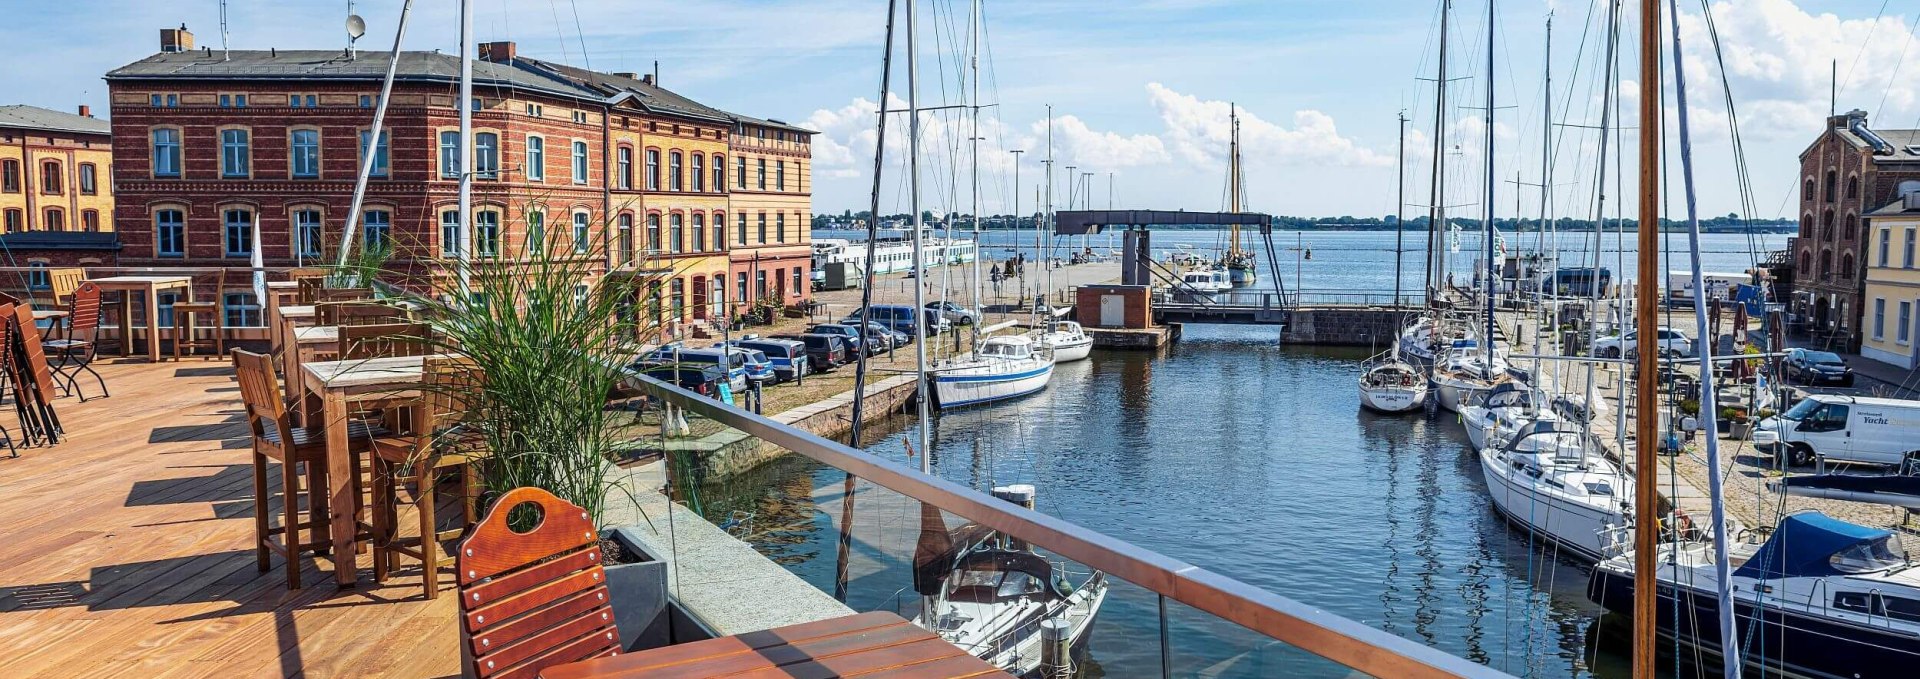 Hafenterrasse in der Hansestadt Stralsund, © TMV/Tiemann